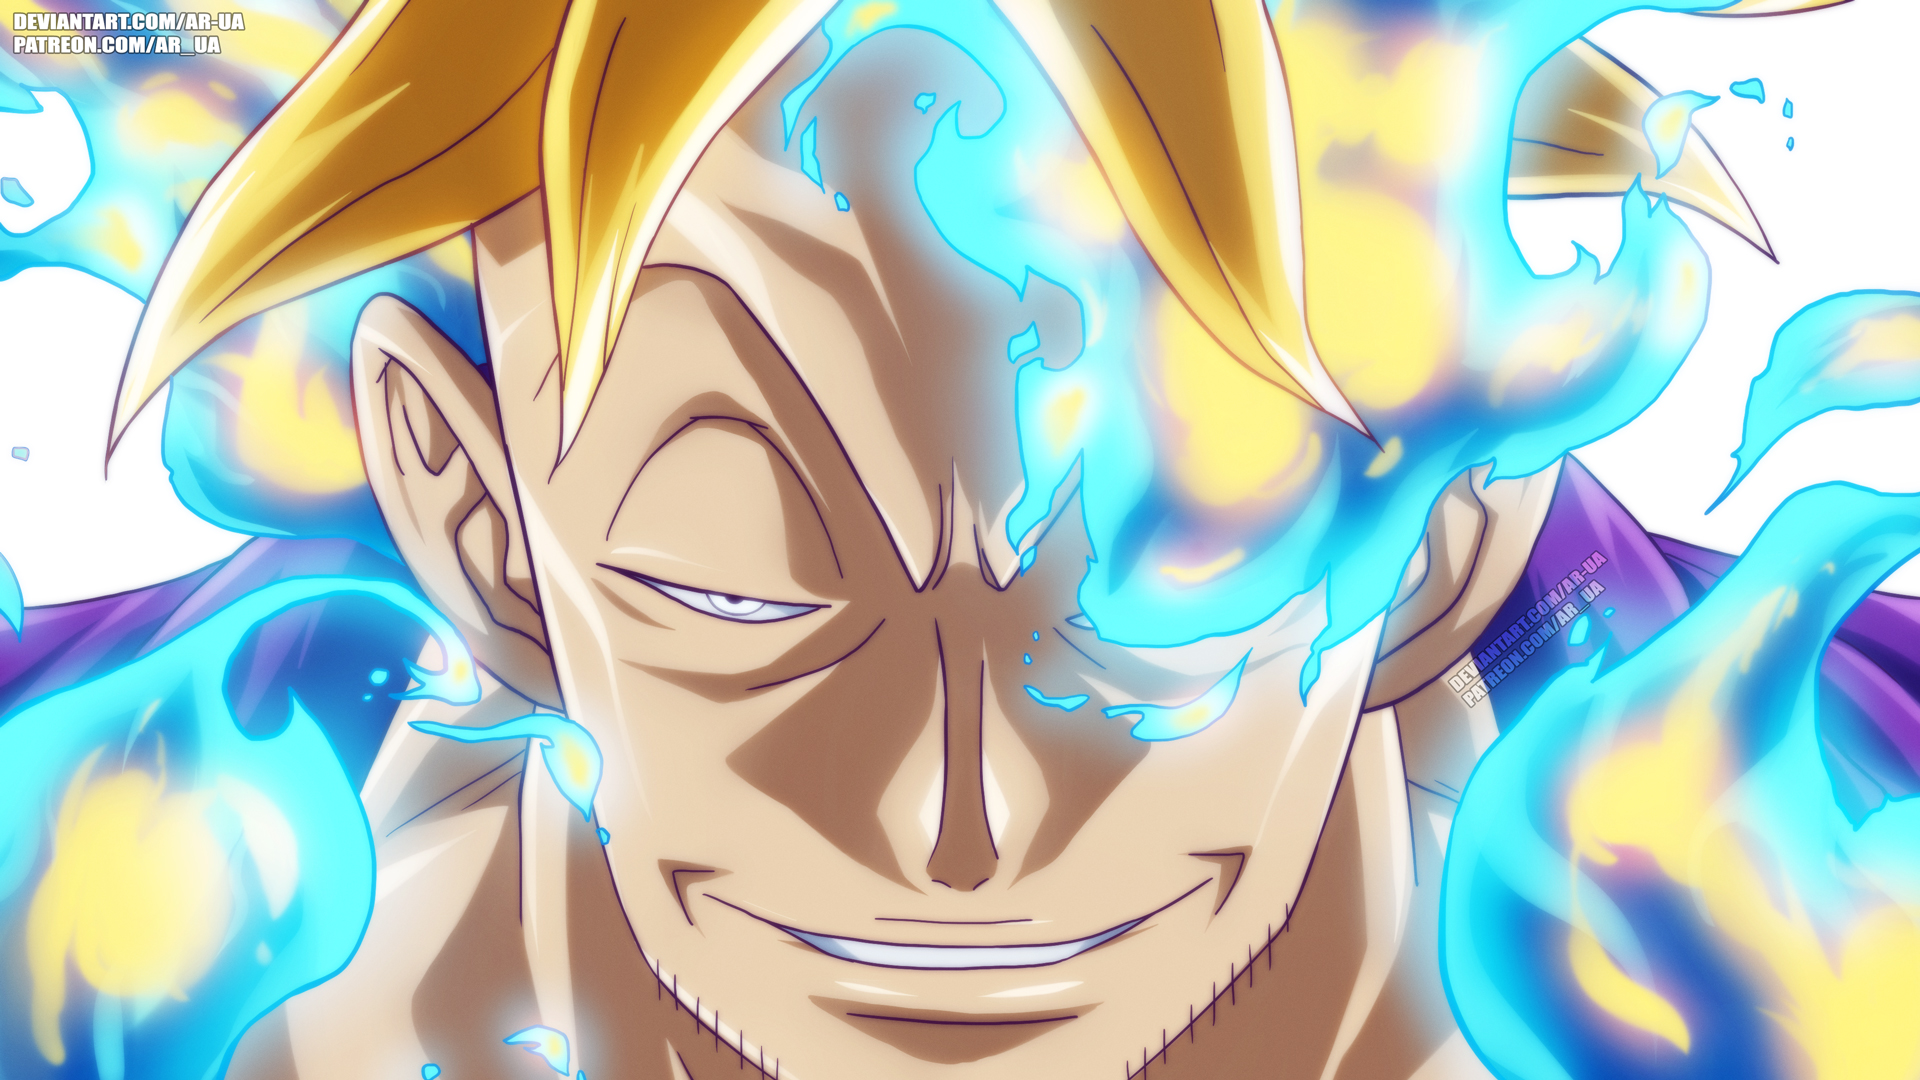 Phác thảo bìa tập 102 của manga One Piece được hé lộ, các fan bất ngờ vì Sanji có sức mạnh mới